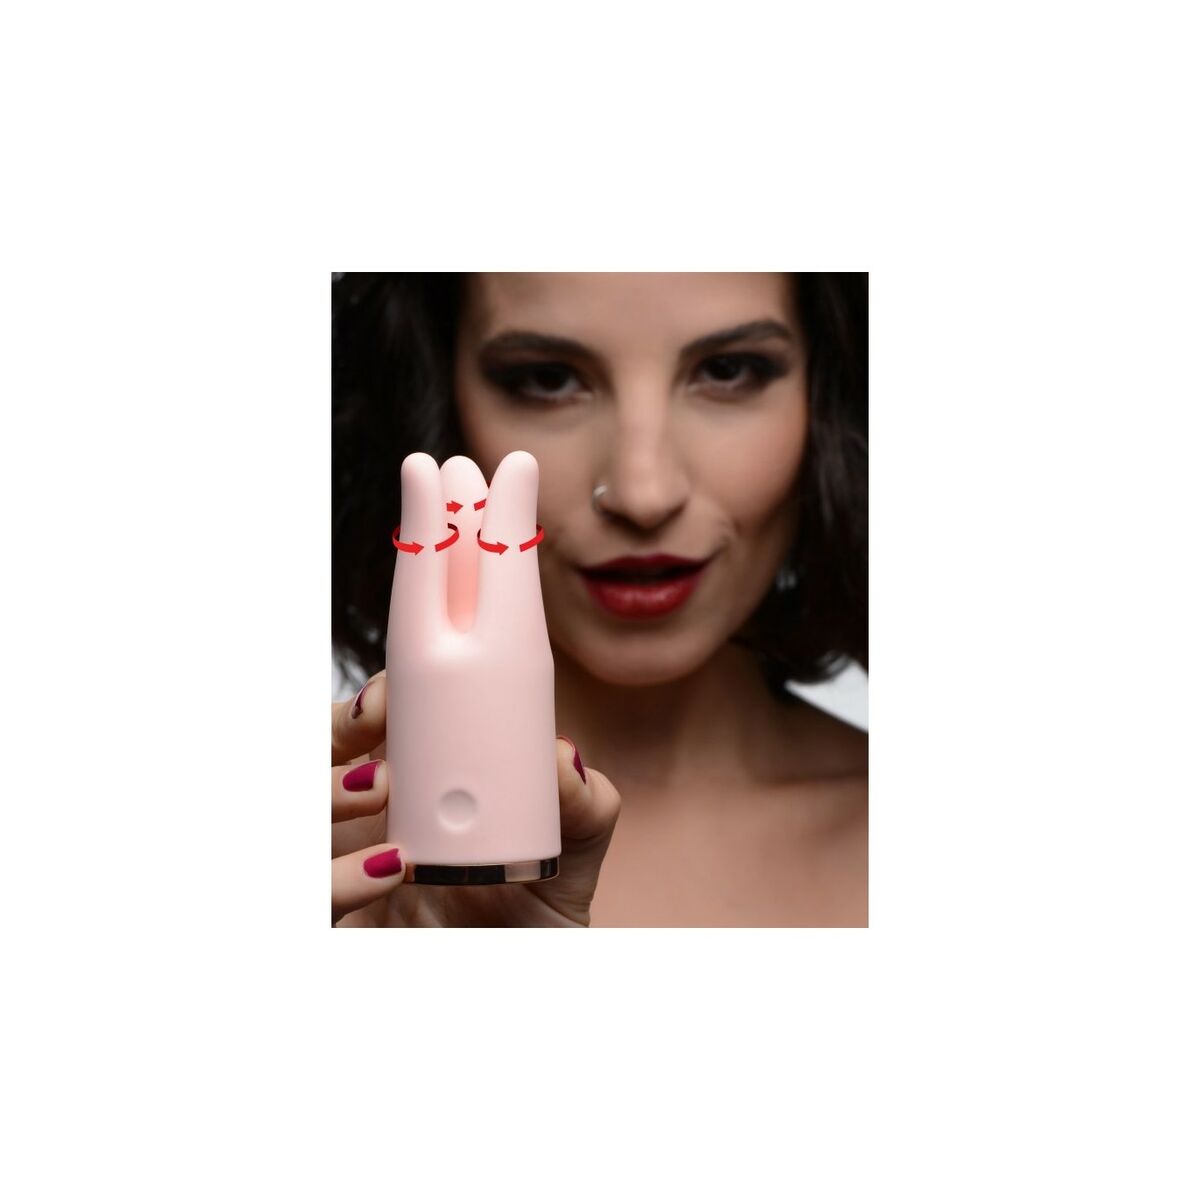 Osta tuote Luotivibraattori XR Pinkki verkkokaupastamme Korhone: Seksikauppa & Erotiikka 20% alennuksella koodilla VIIKONLOPPU